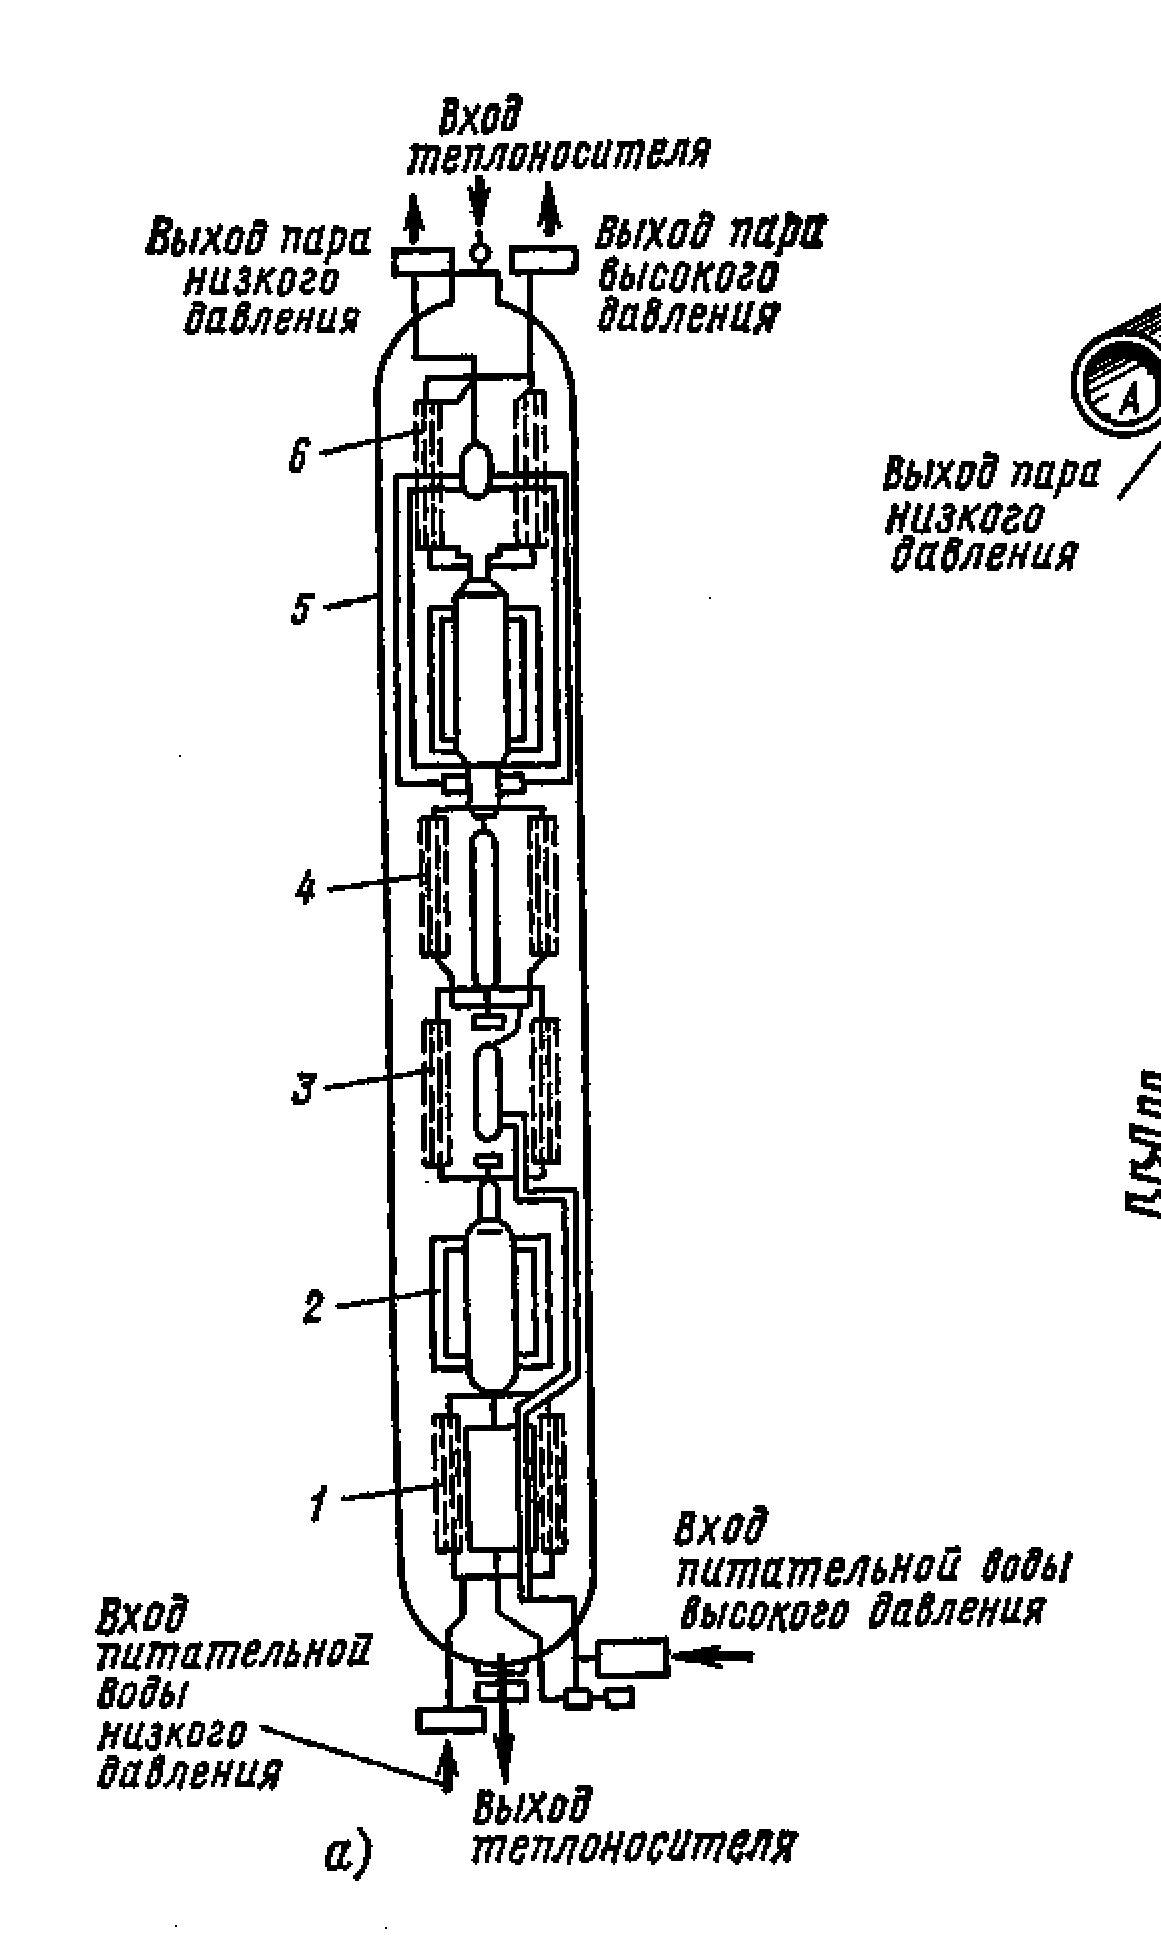 Схема секционного парогенератора с газовым теплоносителем